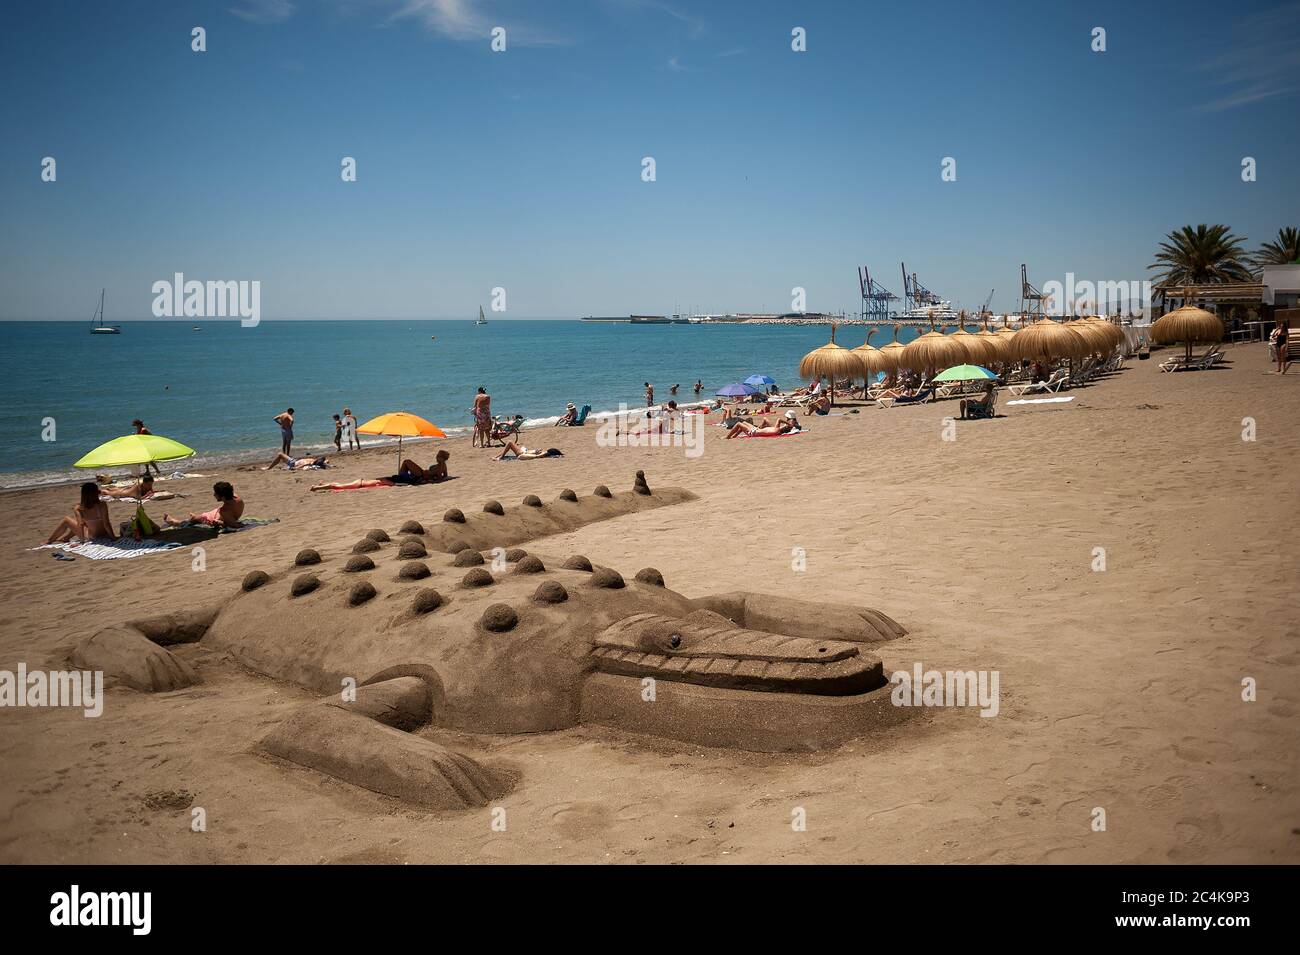 Une sculpture de crocodile de sable vue à la plage de la Caleta pendant que les gens se baignent au soleil pendant une chaude journée d'été.UNE vague de chaleur traverse le pays avec des températures élevées, selon l'Agence espagnole de météorologie. Banque D'Images